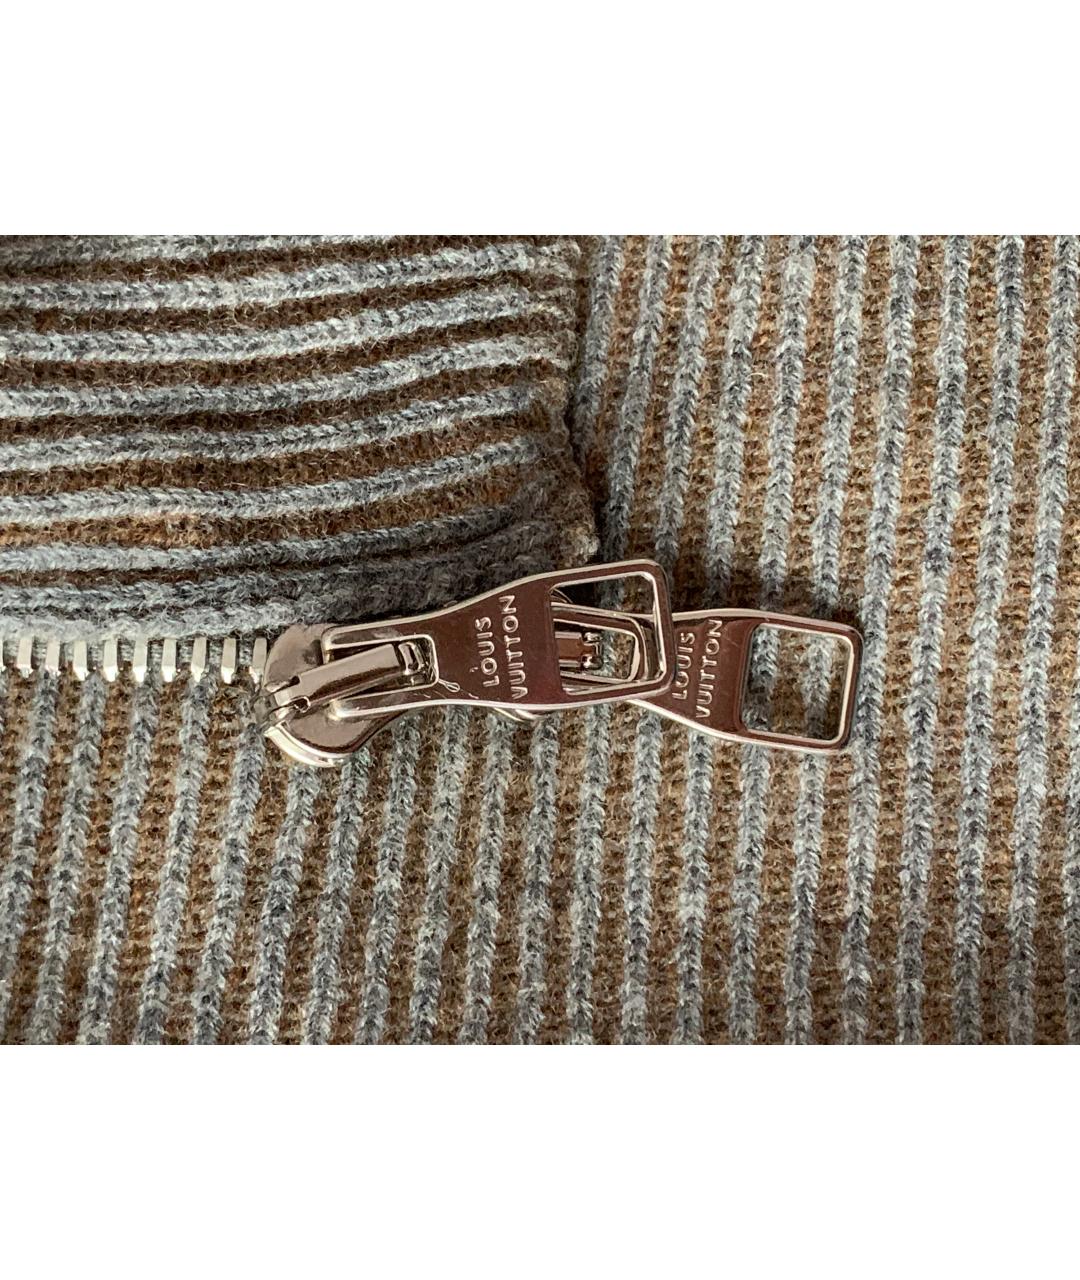 LOUIS VUITTON PRE-OWNED Серый шерстяной джемпер / свитер, фото 4